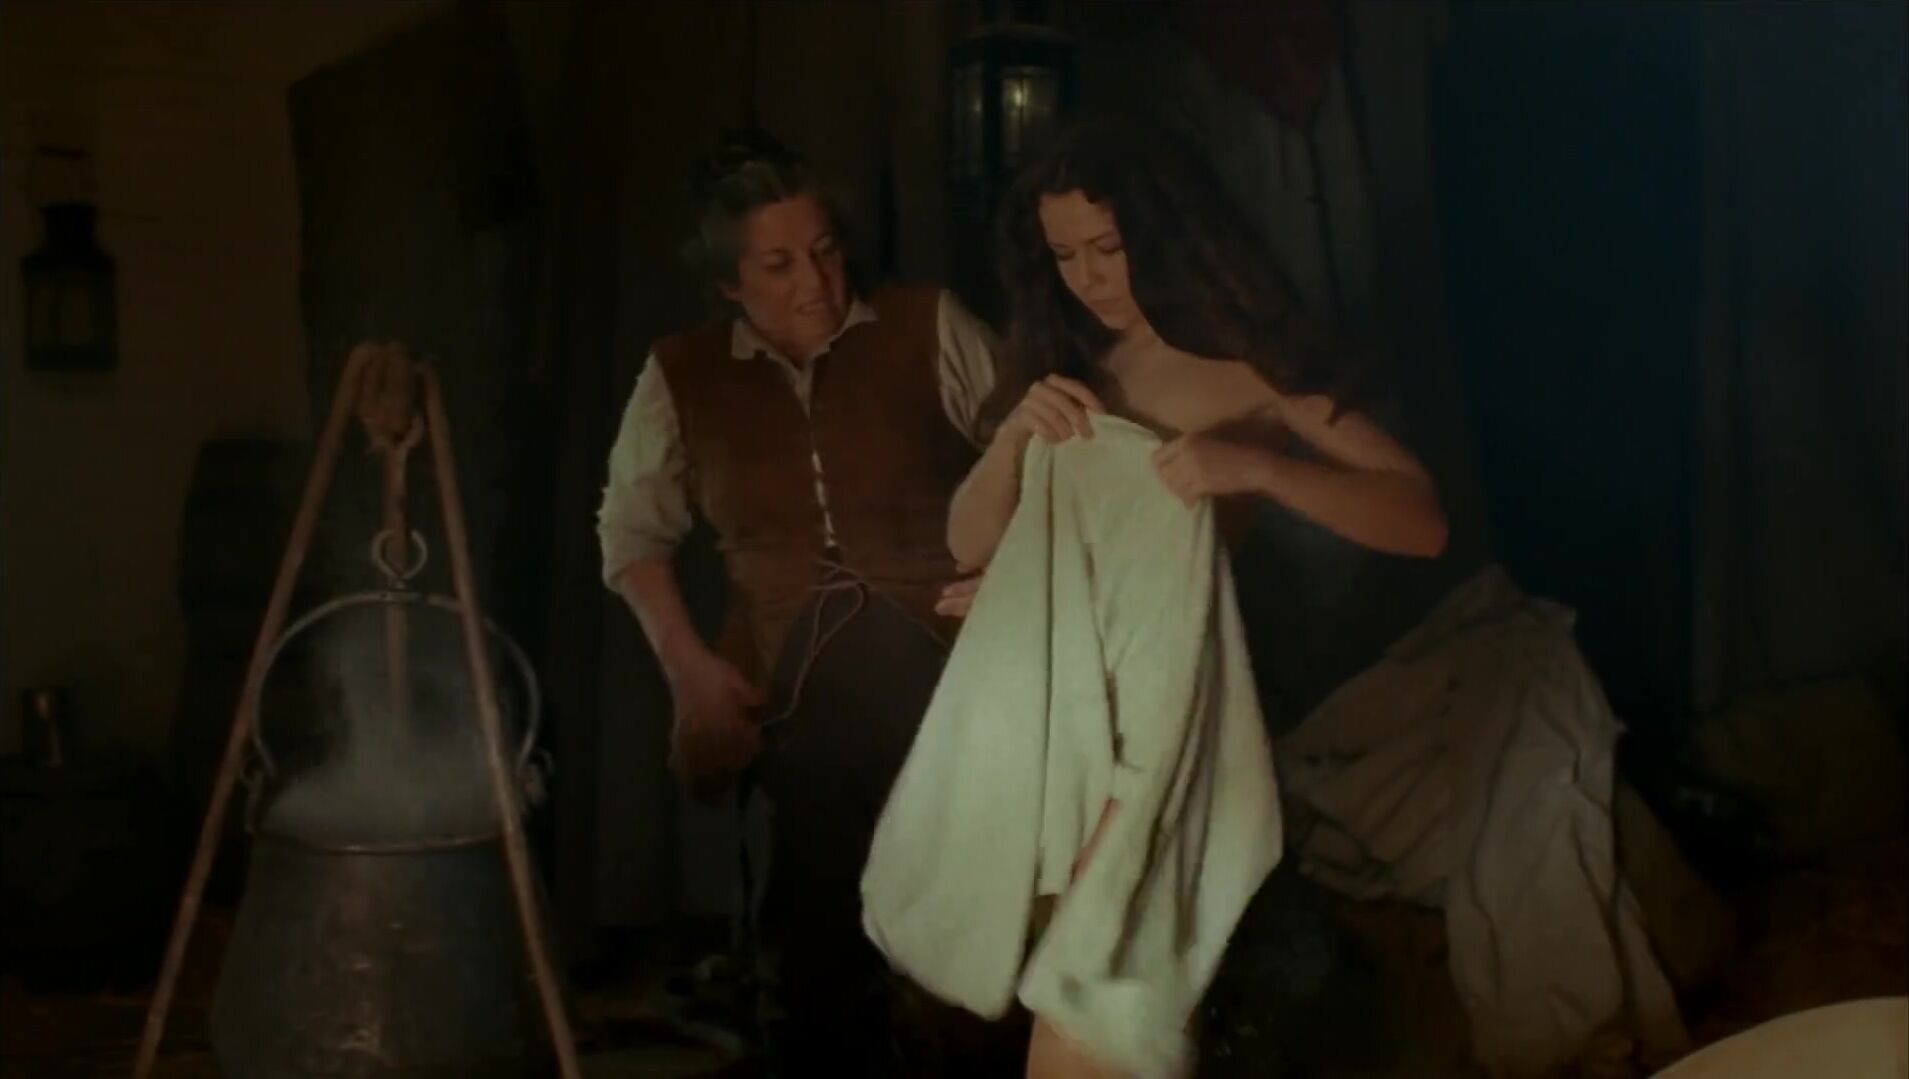 Amateur Koo Stark nude in Cruel Passion obscene HD sex scene where she is coerced into sex (1977) Strip